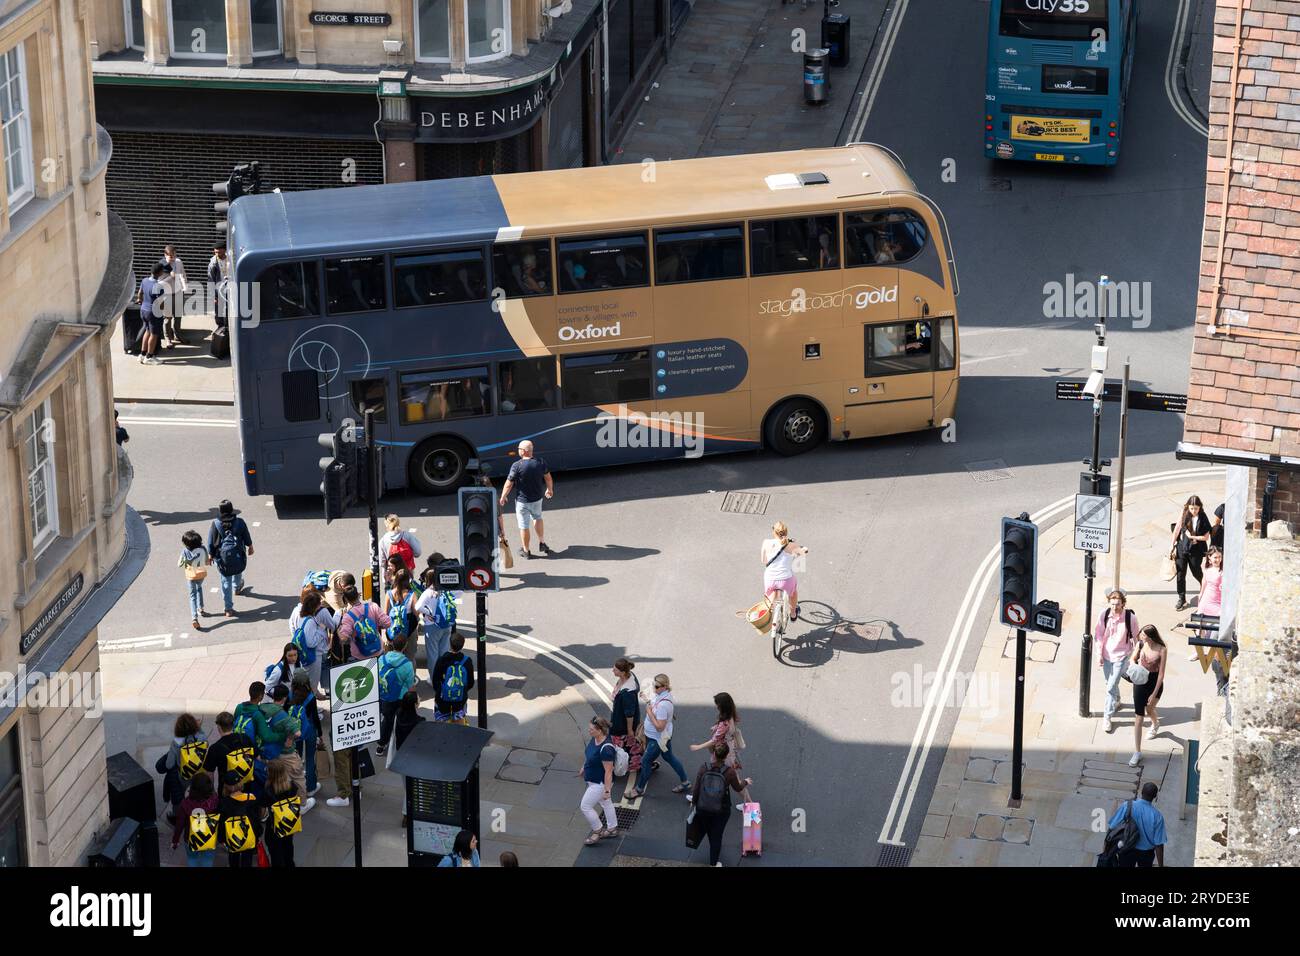 Aus der Vogelperspektive eines Doppeldeckerbusses von Stagecoach Gold - eine Luxusmarke, die von verschiedenen Stagecoach-Tochtergesellschaften genutzt wird. An einer Kreuzung in Oxford. UK Stockfoto